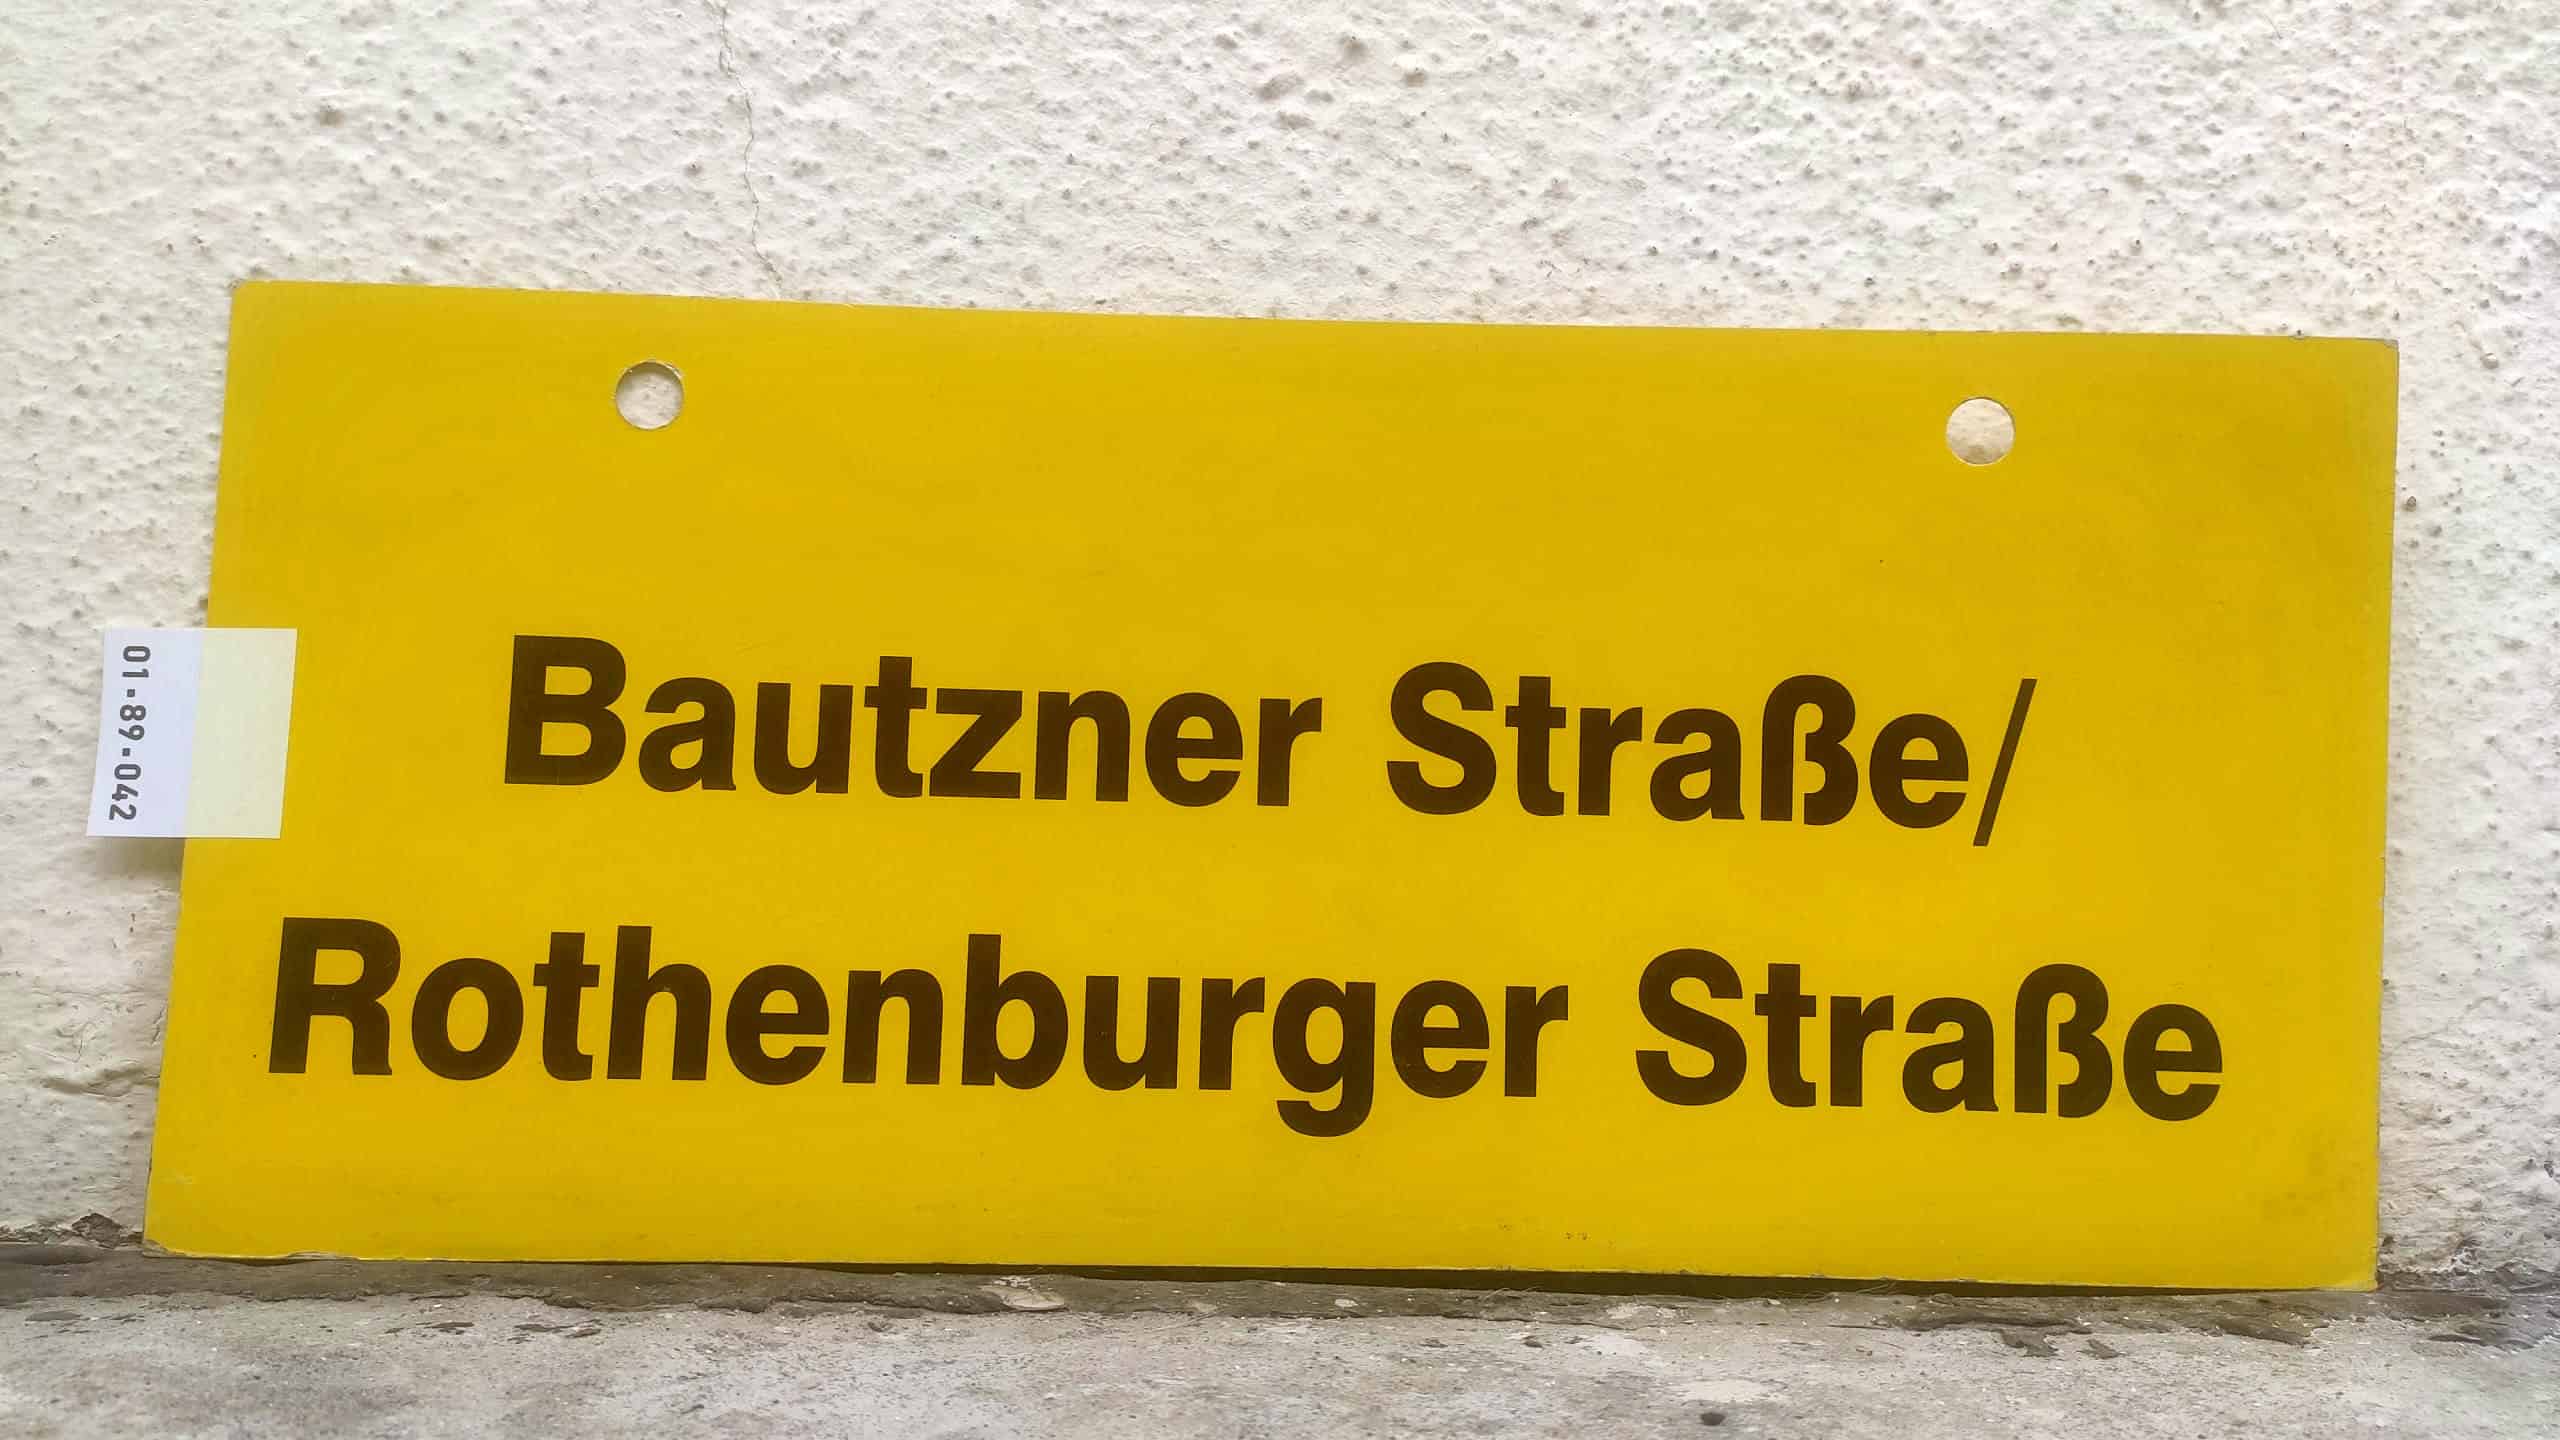 Bautzner Straße/ Rothenburger Straße